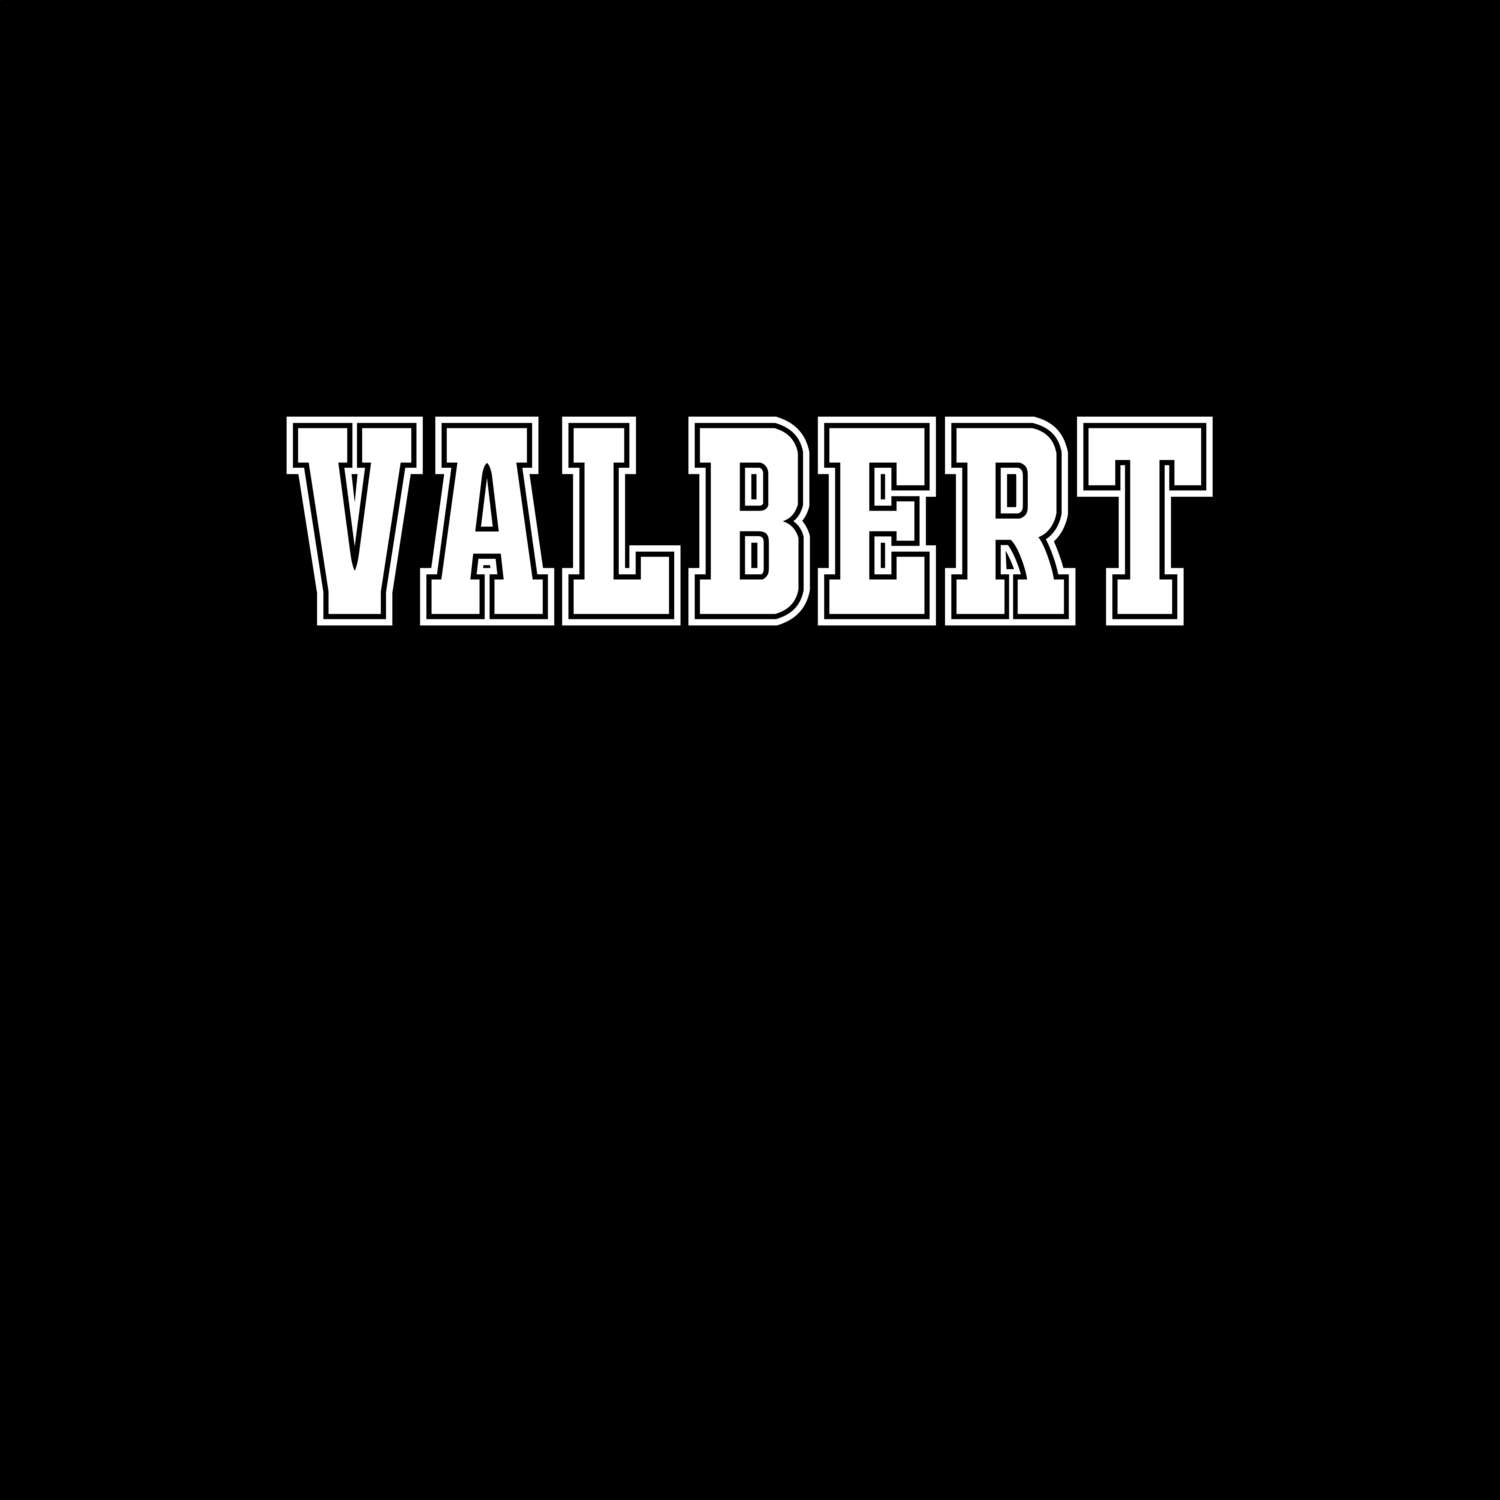 Valbert T-Shirt »Classic«